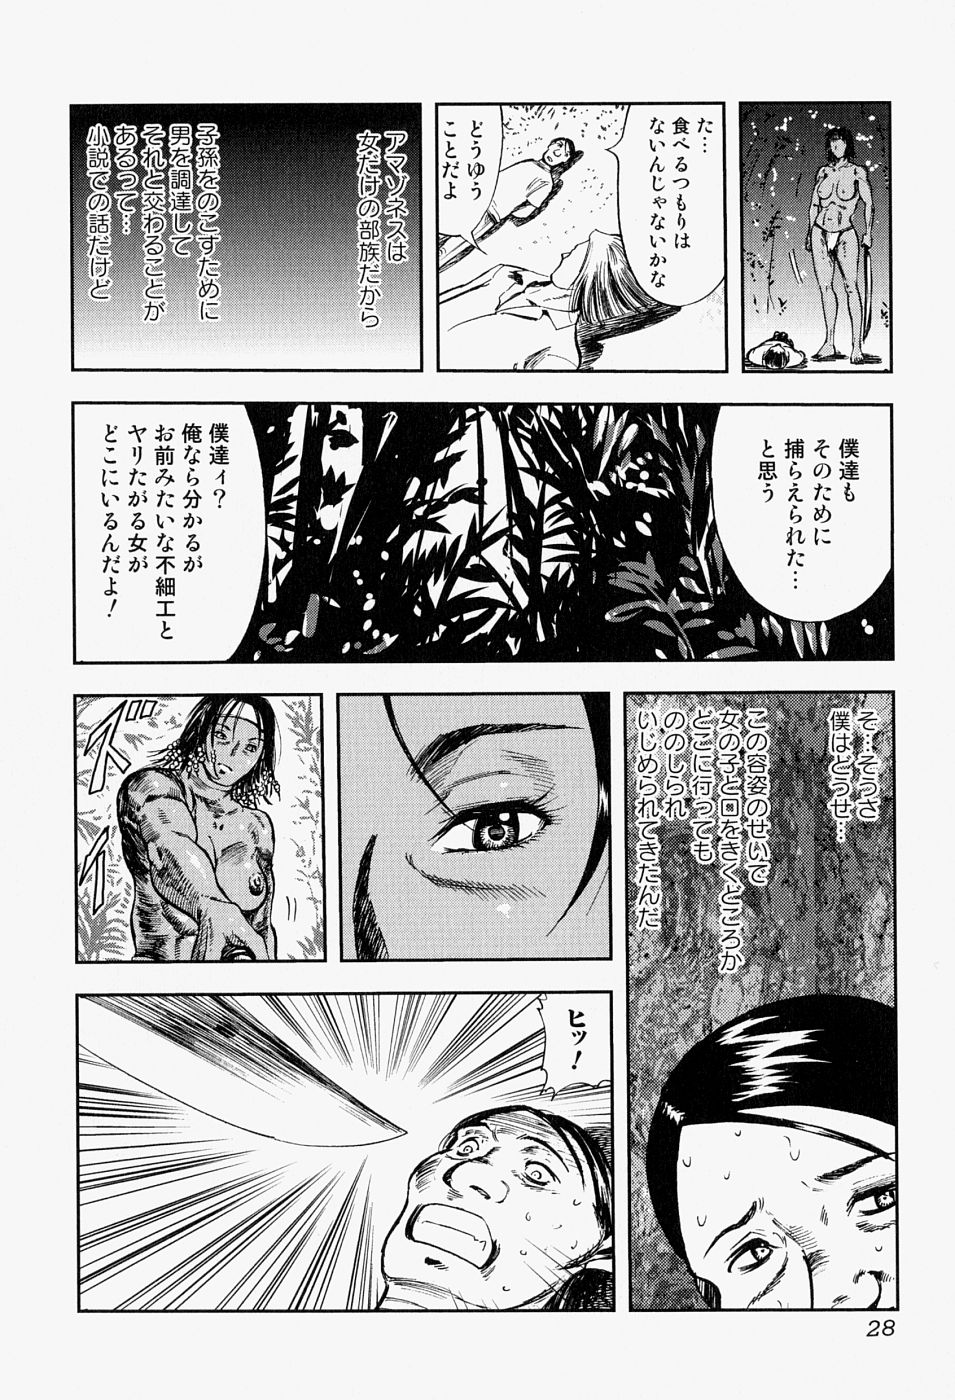 [Anthology] Takedakeshiki Onna Tachi Amazons 2 page 28 full